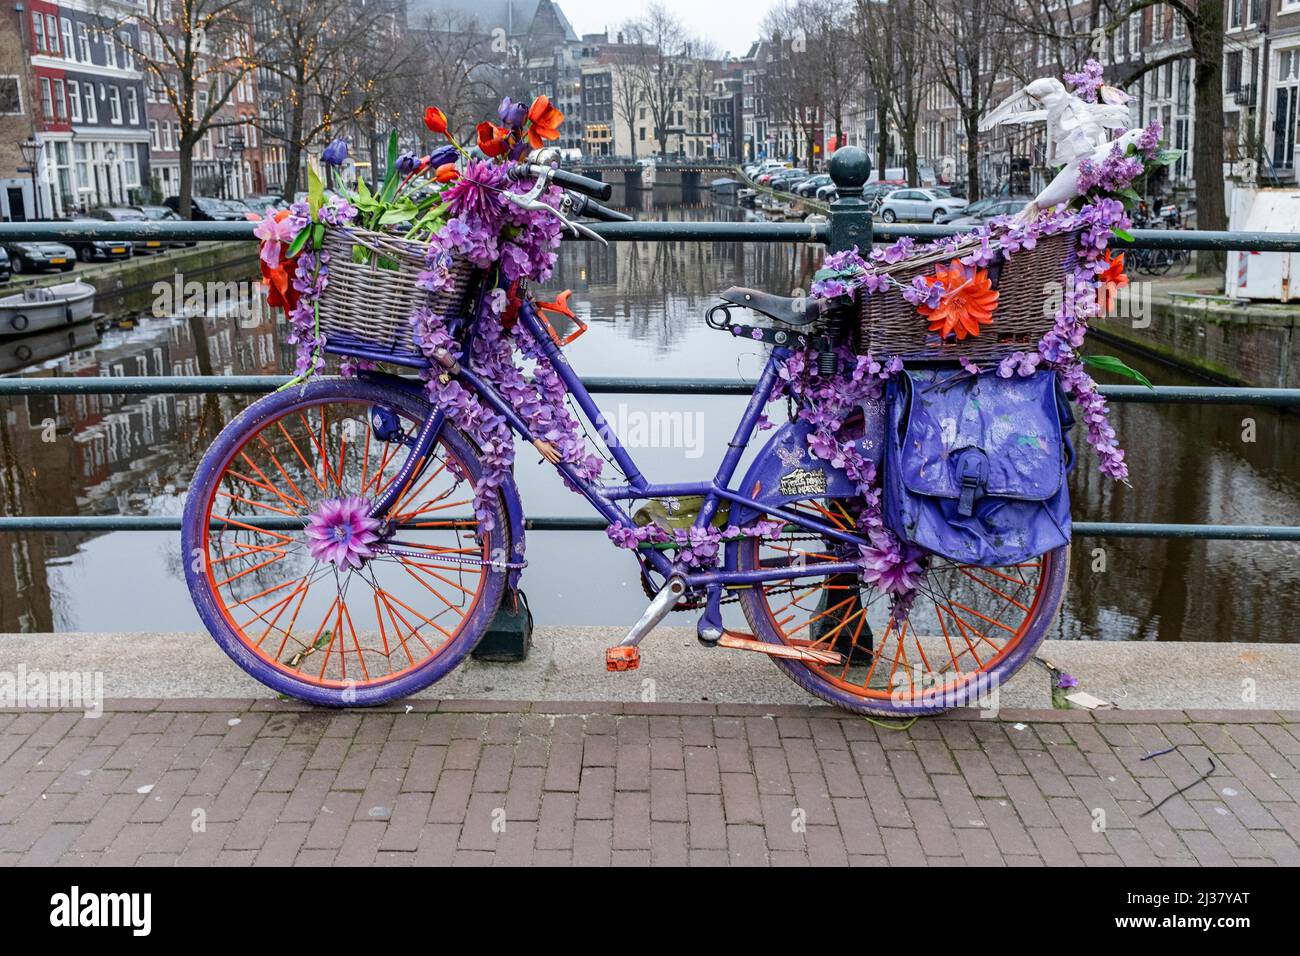 - Alamy der Grachtenbrücken Amsterdam, geparkt auf als Stockfotografie sind bunten mit Niederlande. Kunstprojekt in die Stadt Blumen urbanes Fahrräder geschmückt, mehreren